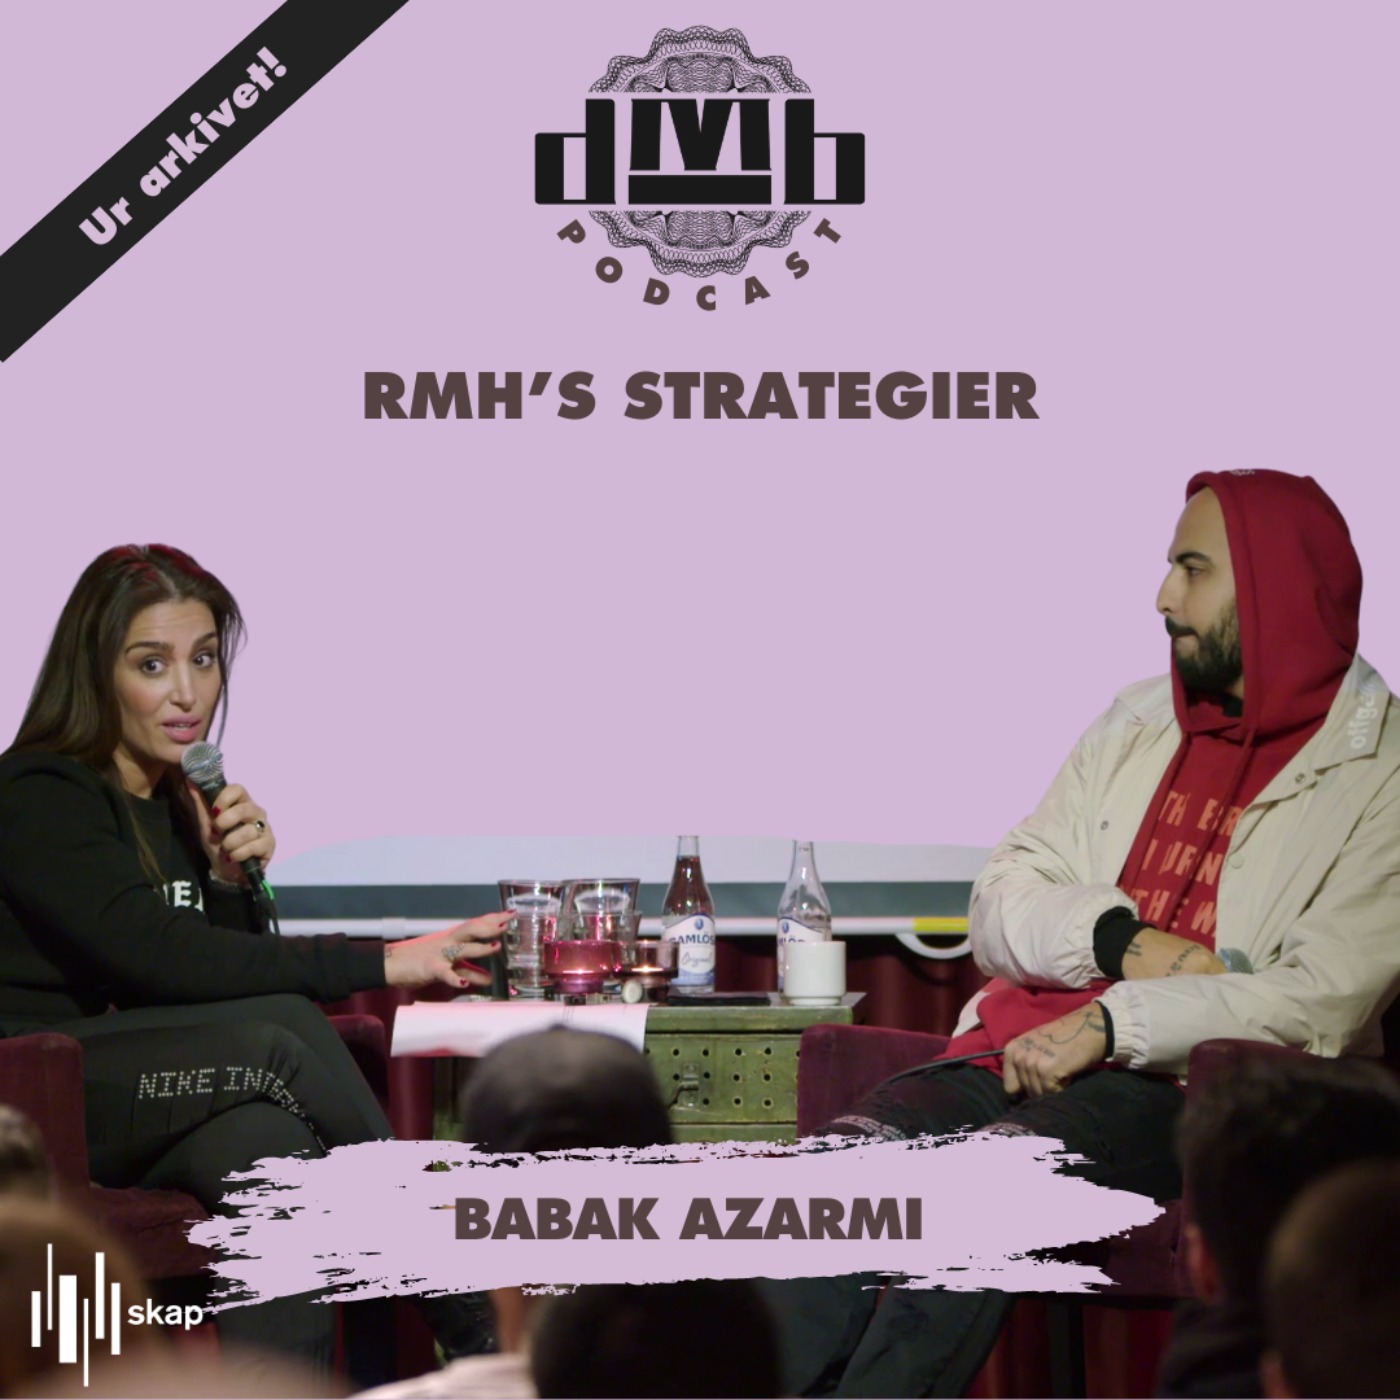 BABAK AZARMI - Om RMH’s strategier som gett framgången.